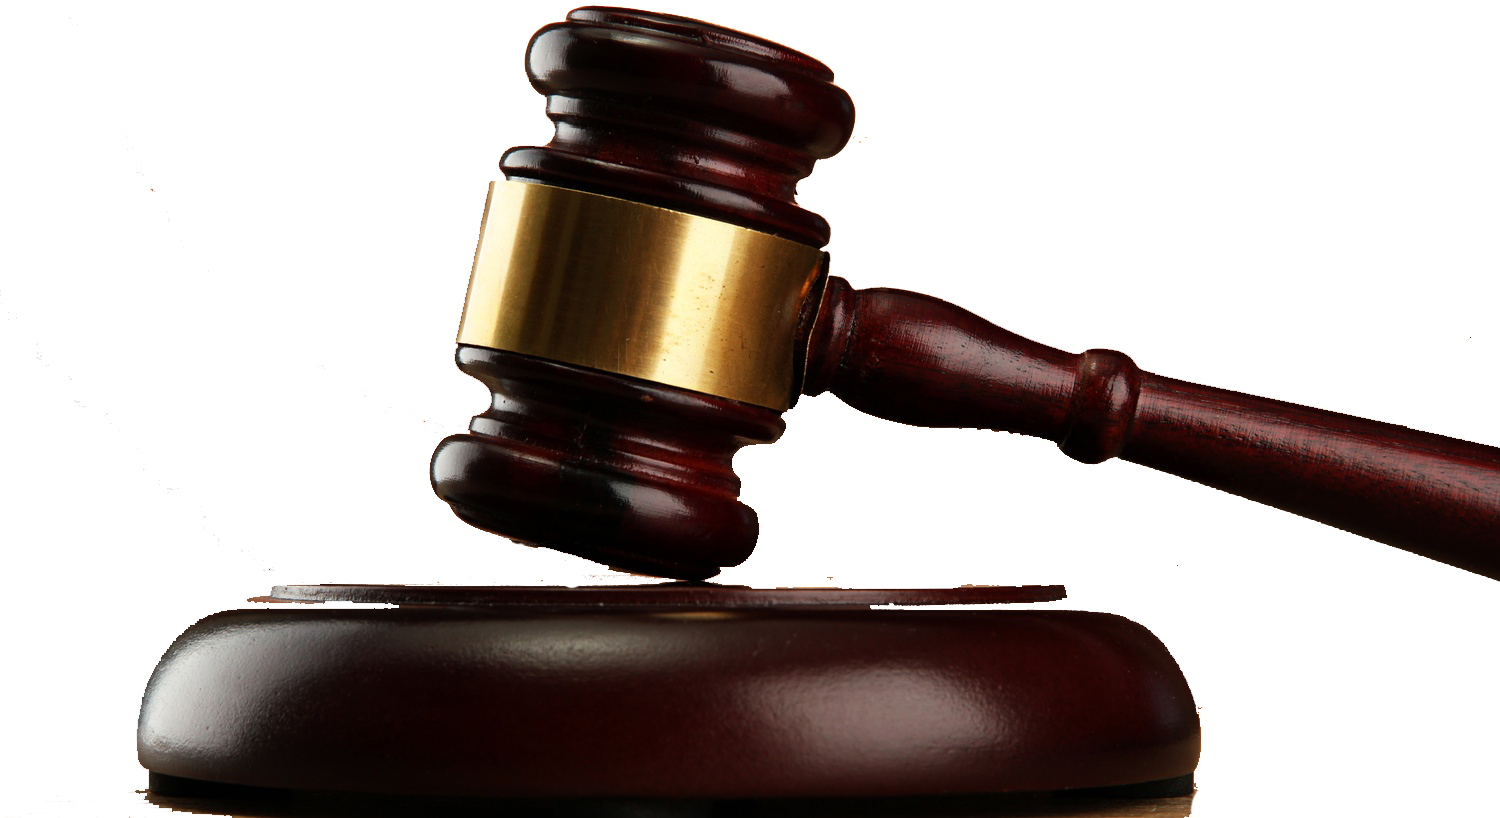 ΣΥΜΒΑΙΝΕΙ ΤΩΡΑ - Δίκη οικονομικού σκανδάλου: Τρεις κατηγορούμενοι αιτούνται αναβολή